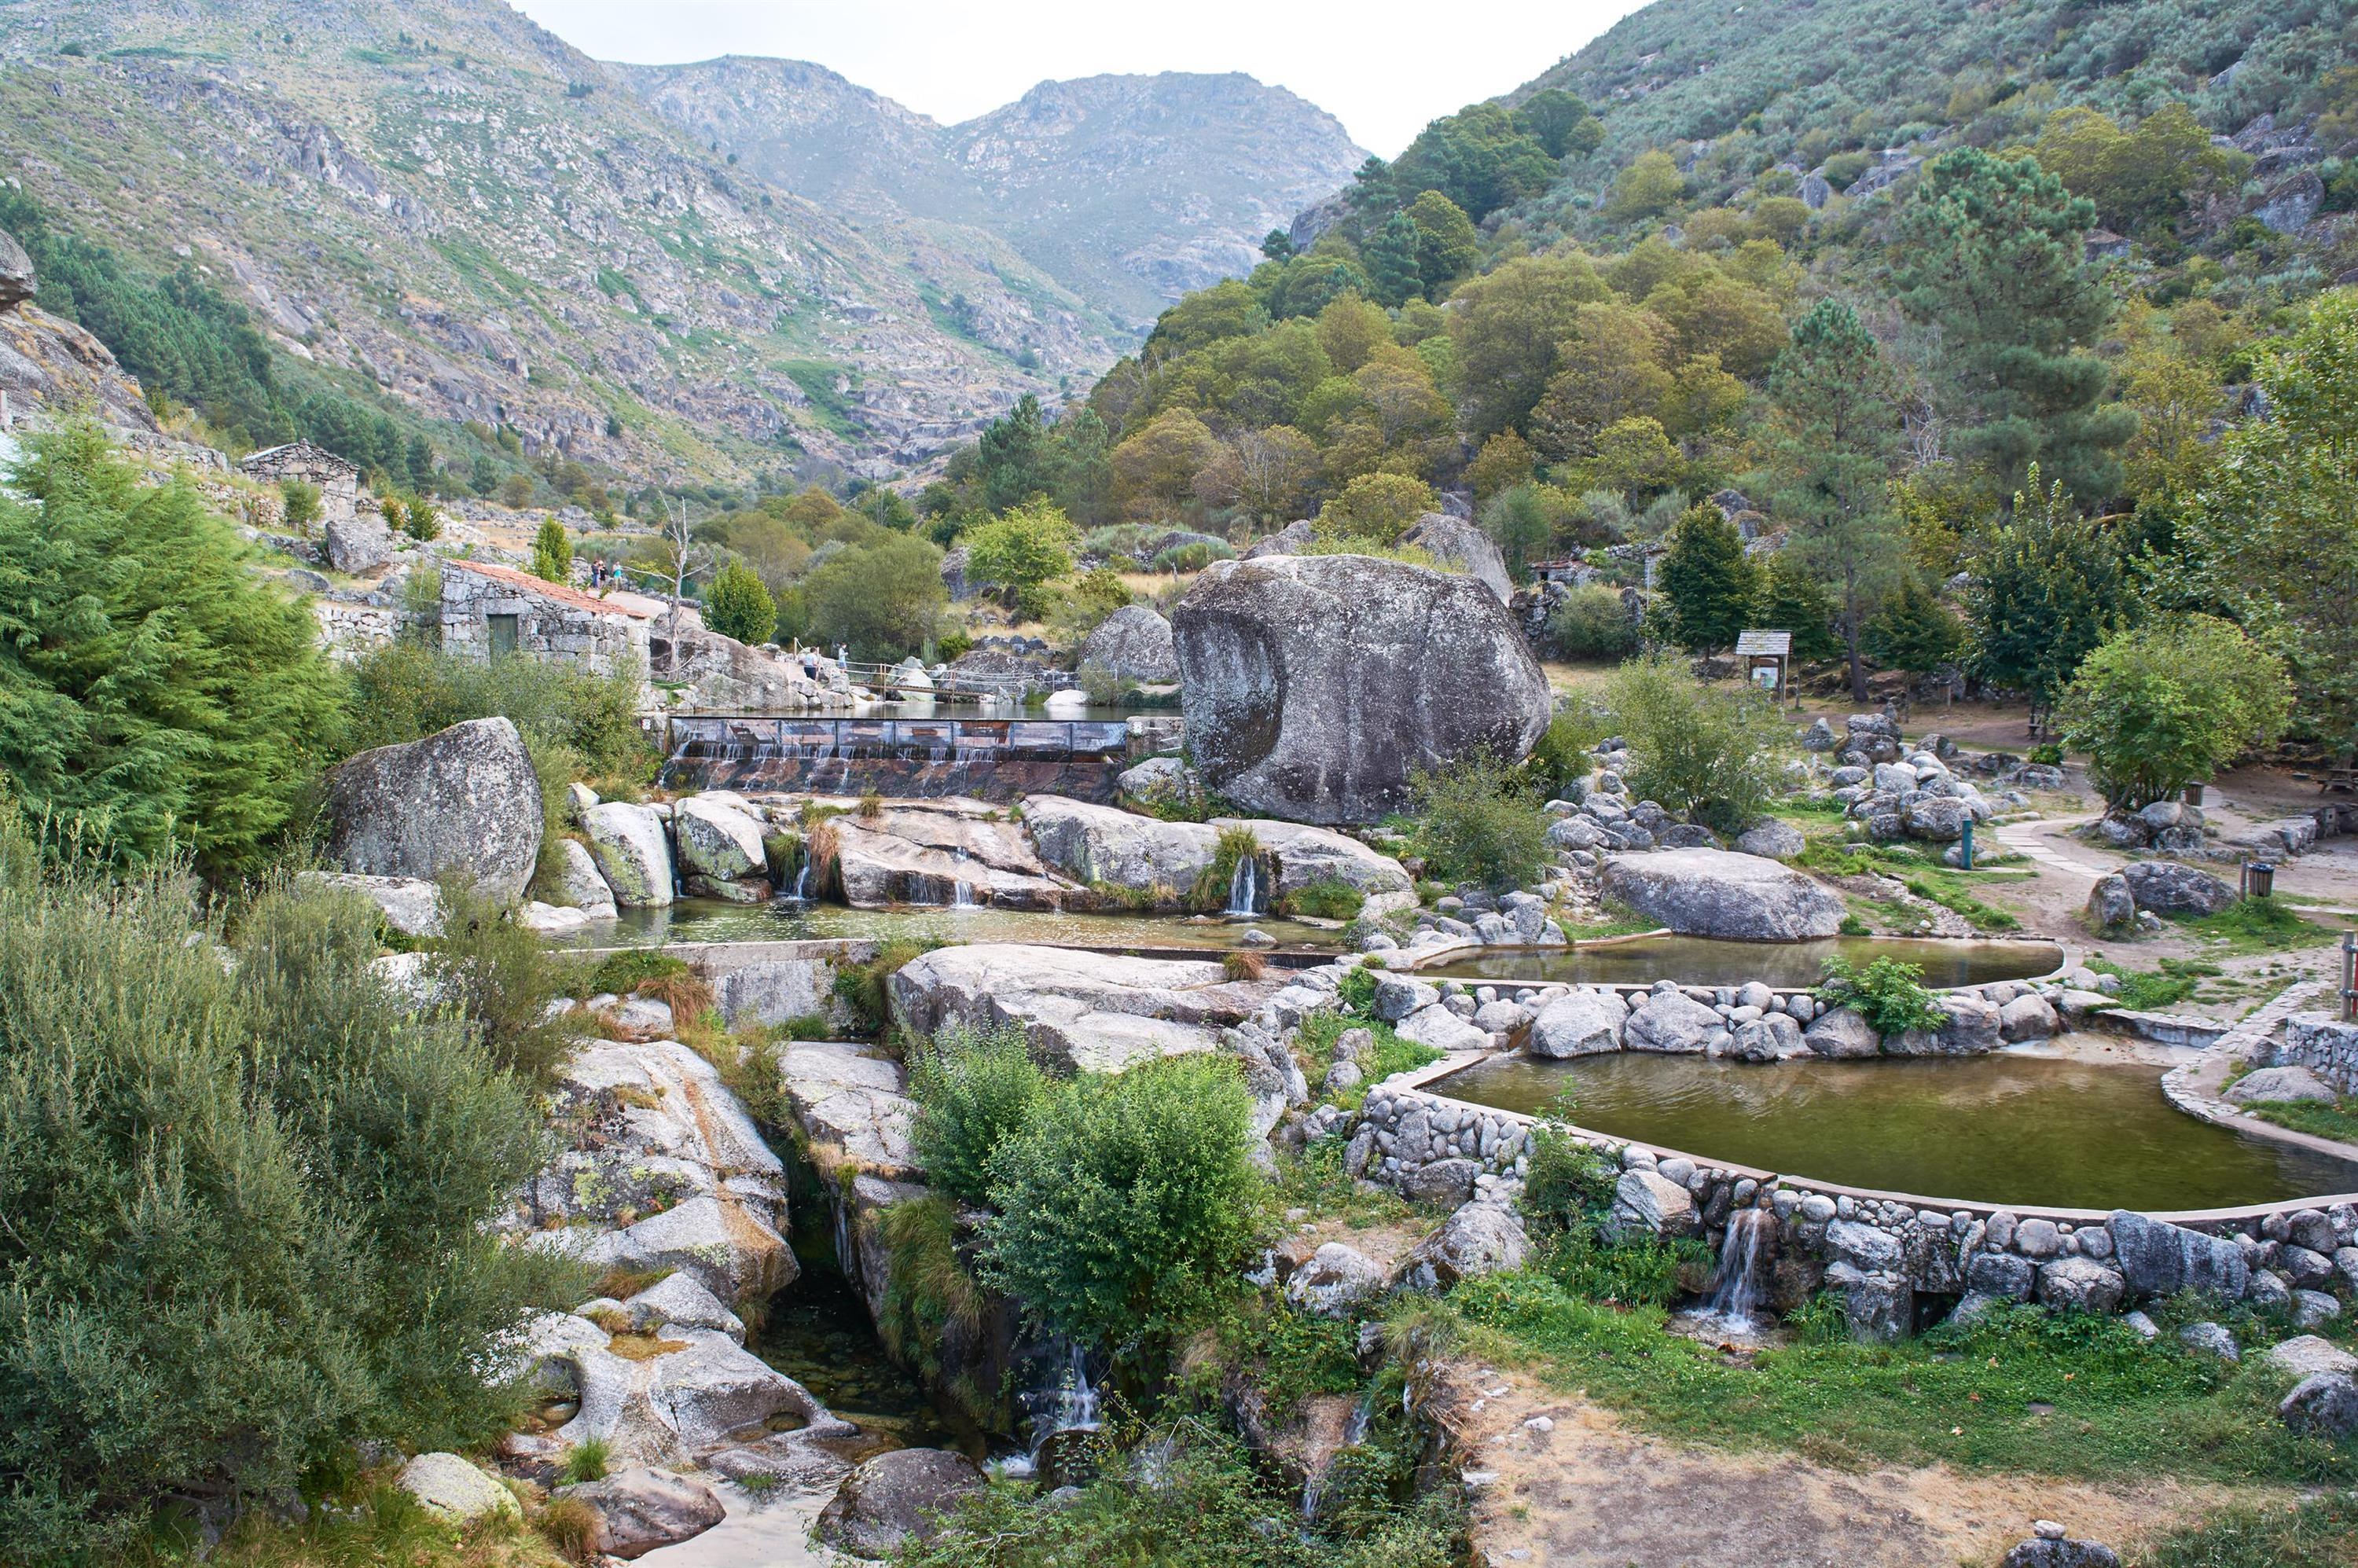 Ache Tudo na Serra - O maior portal de divulgação e turismo da